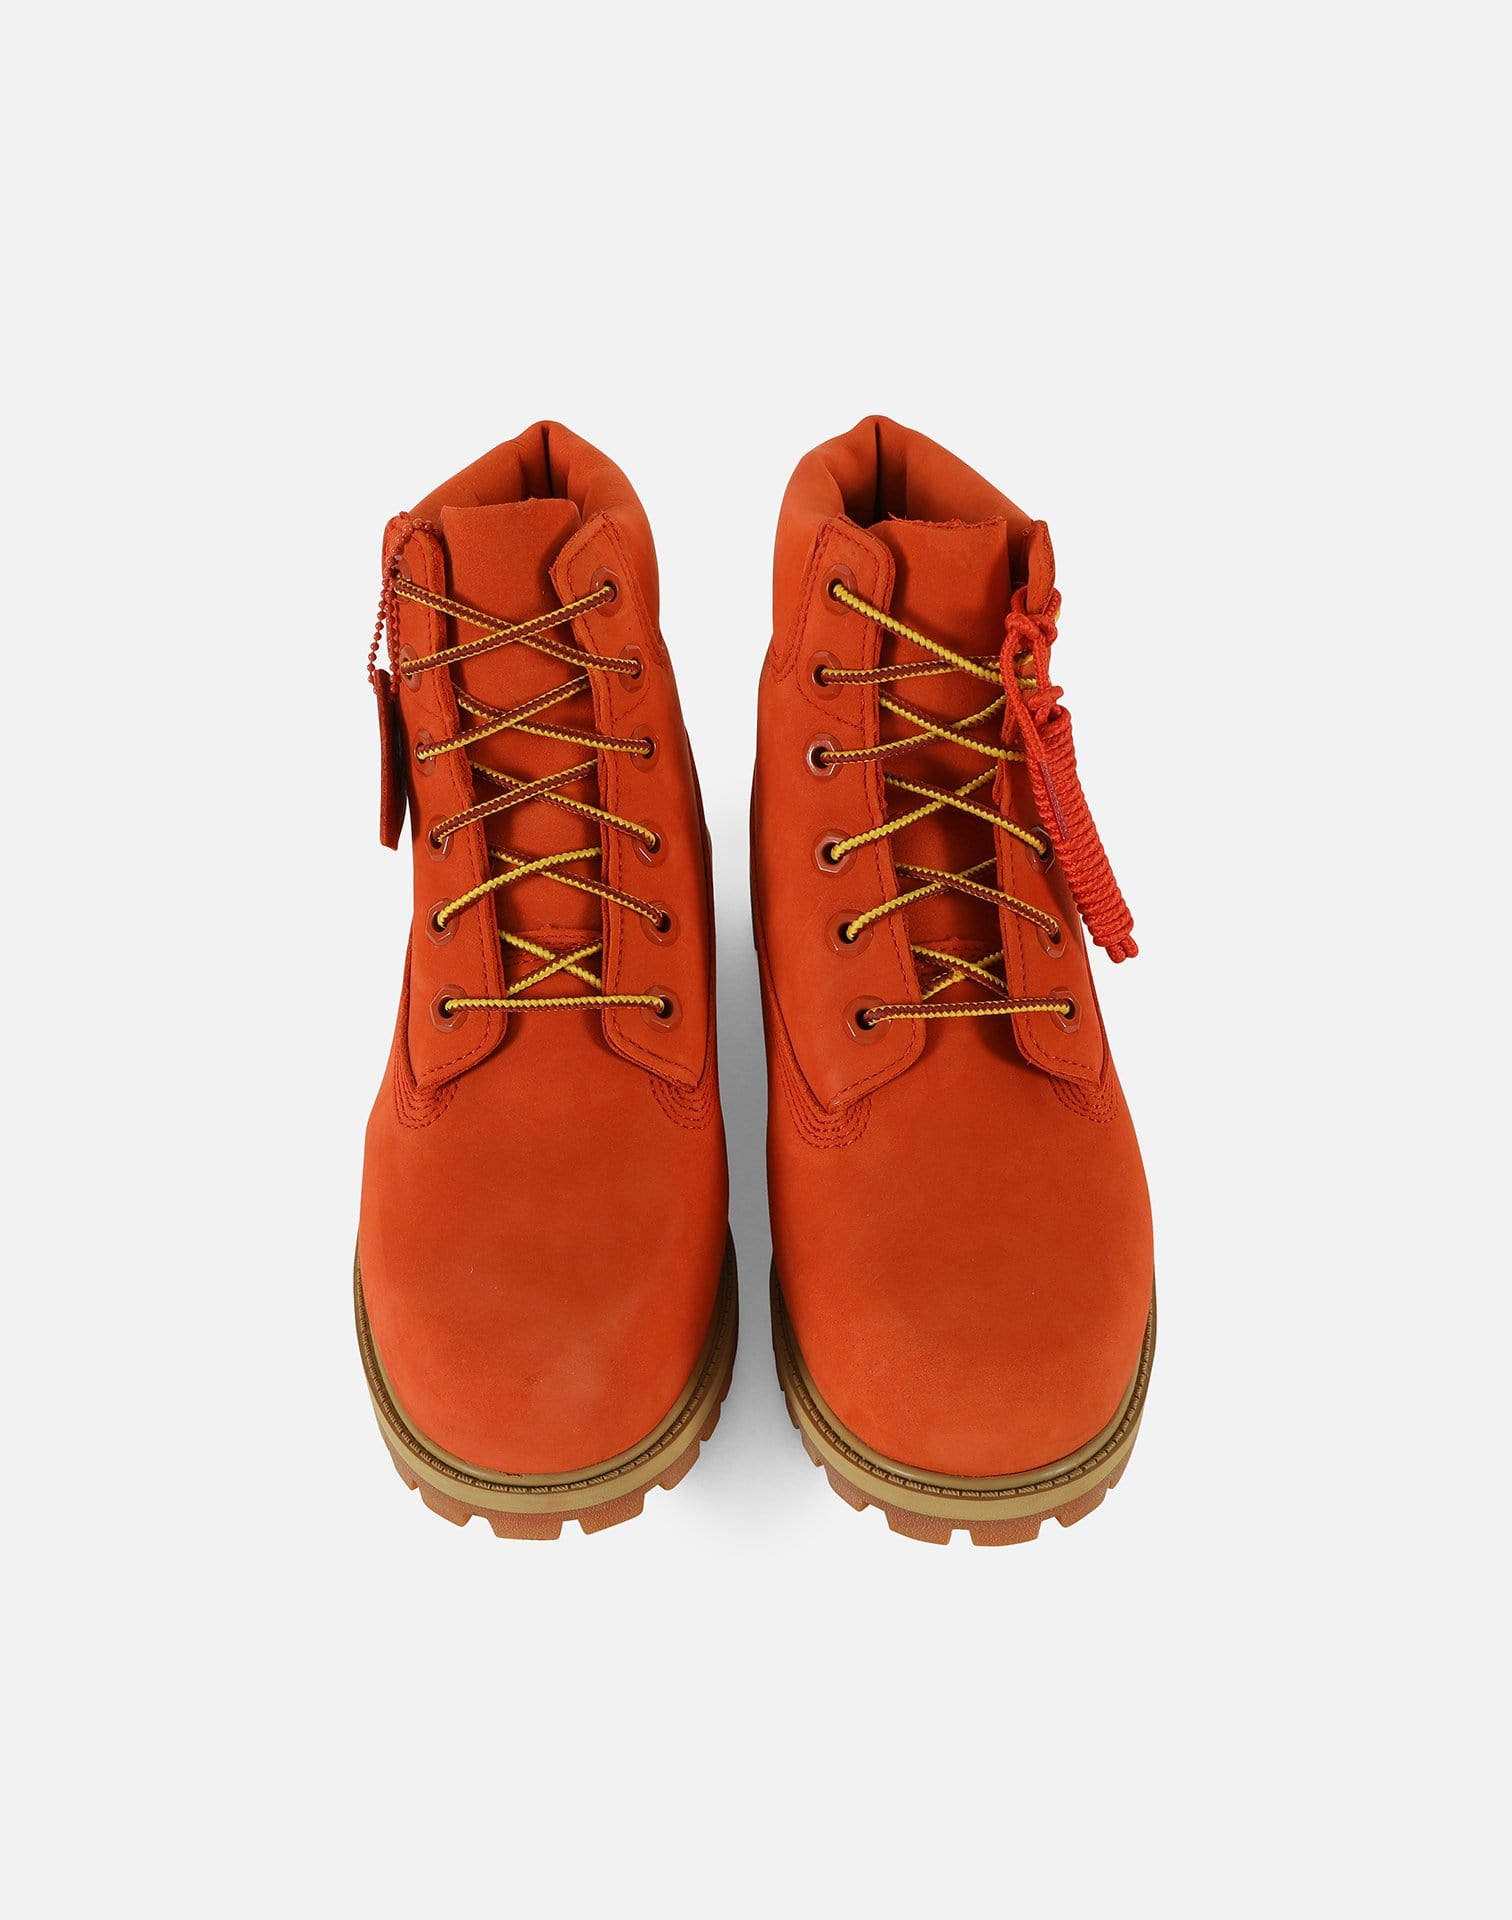 Timberland x DTLR Exclusive 6-Inch Premium Waterproof 'Orange Blaze' Boots Pre-School